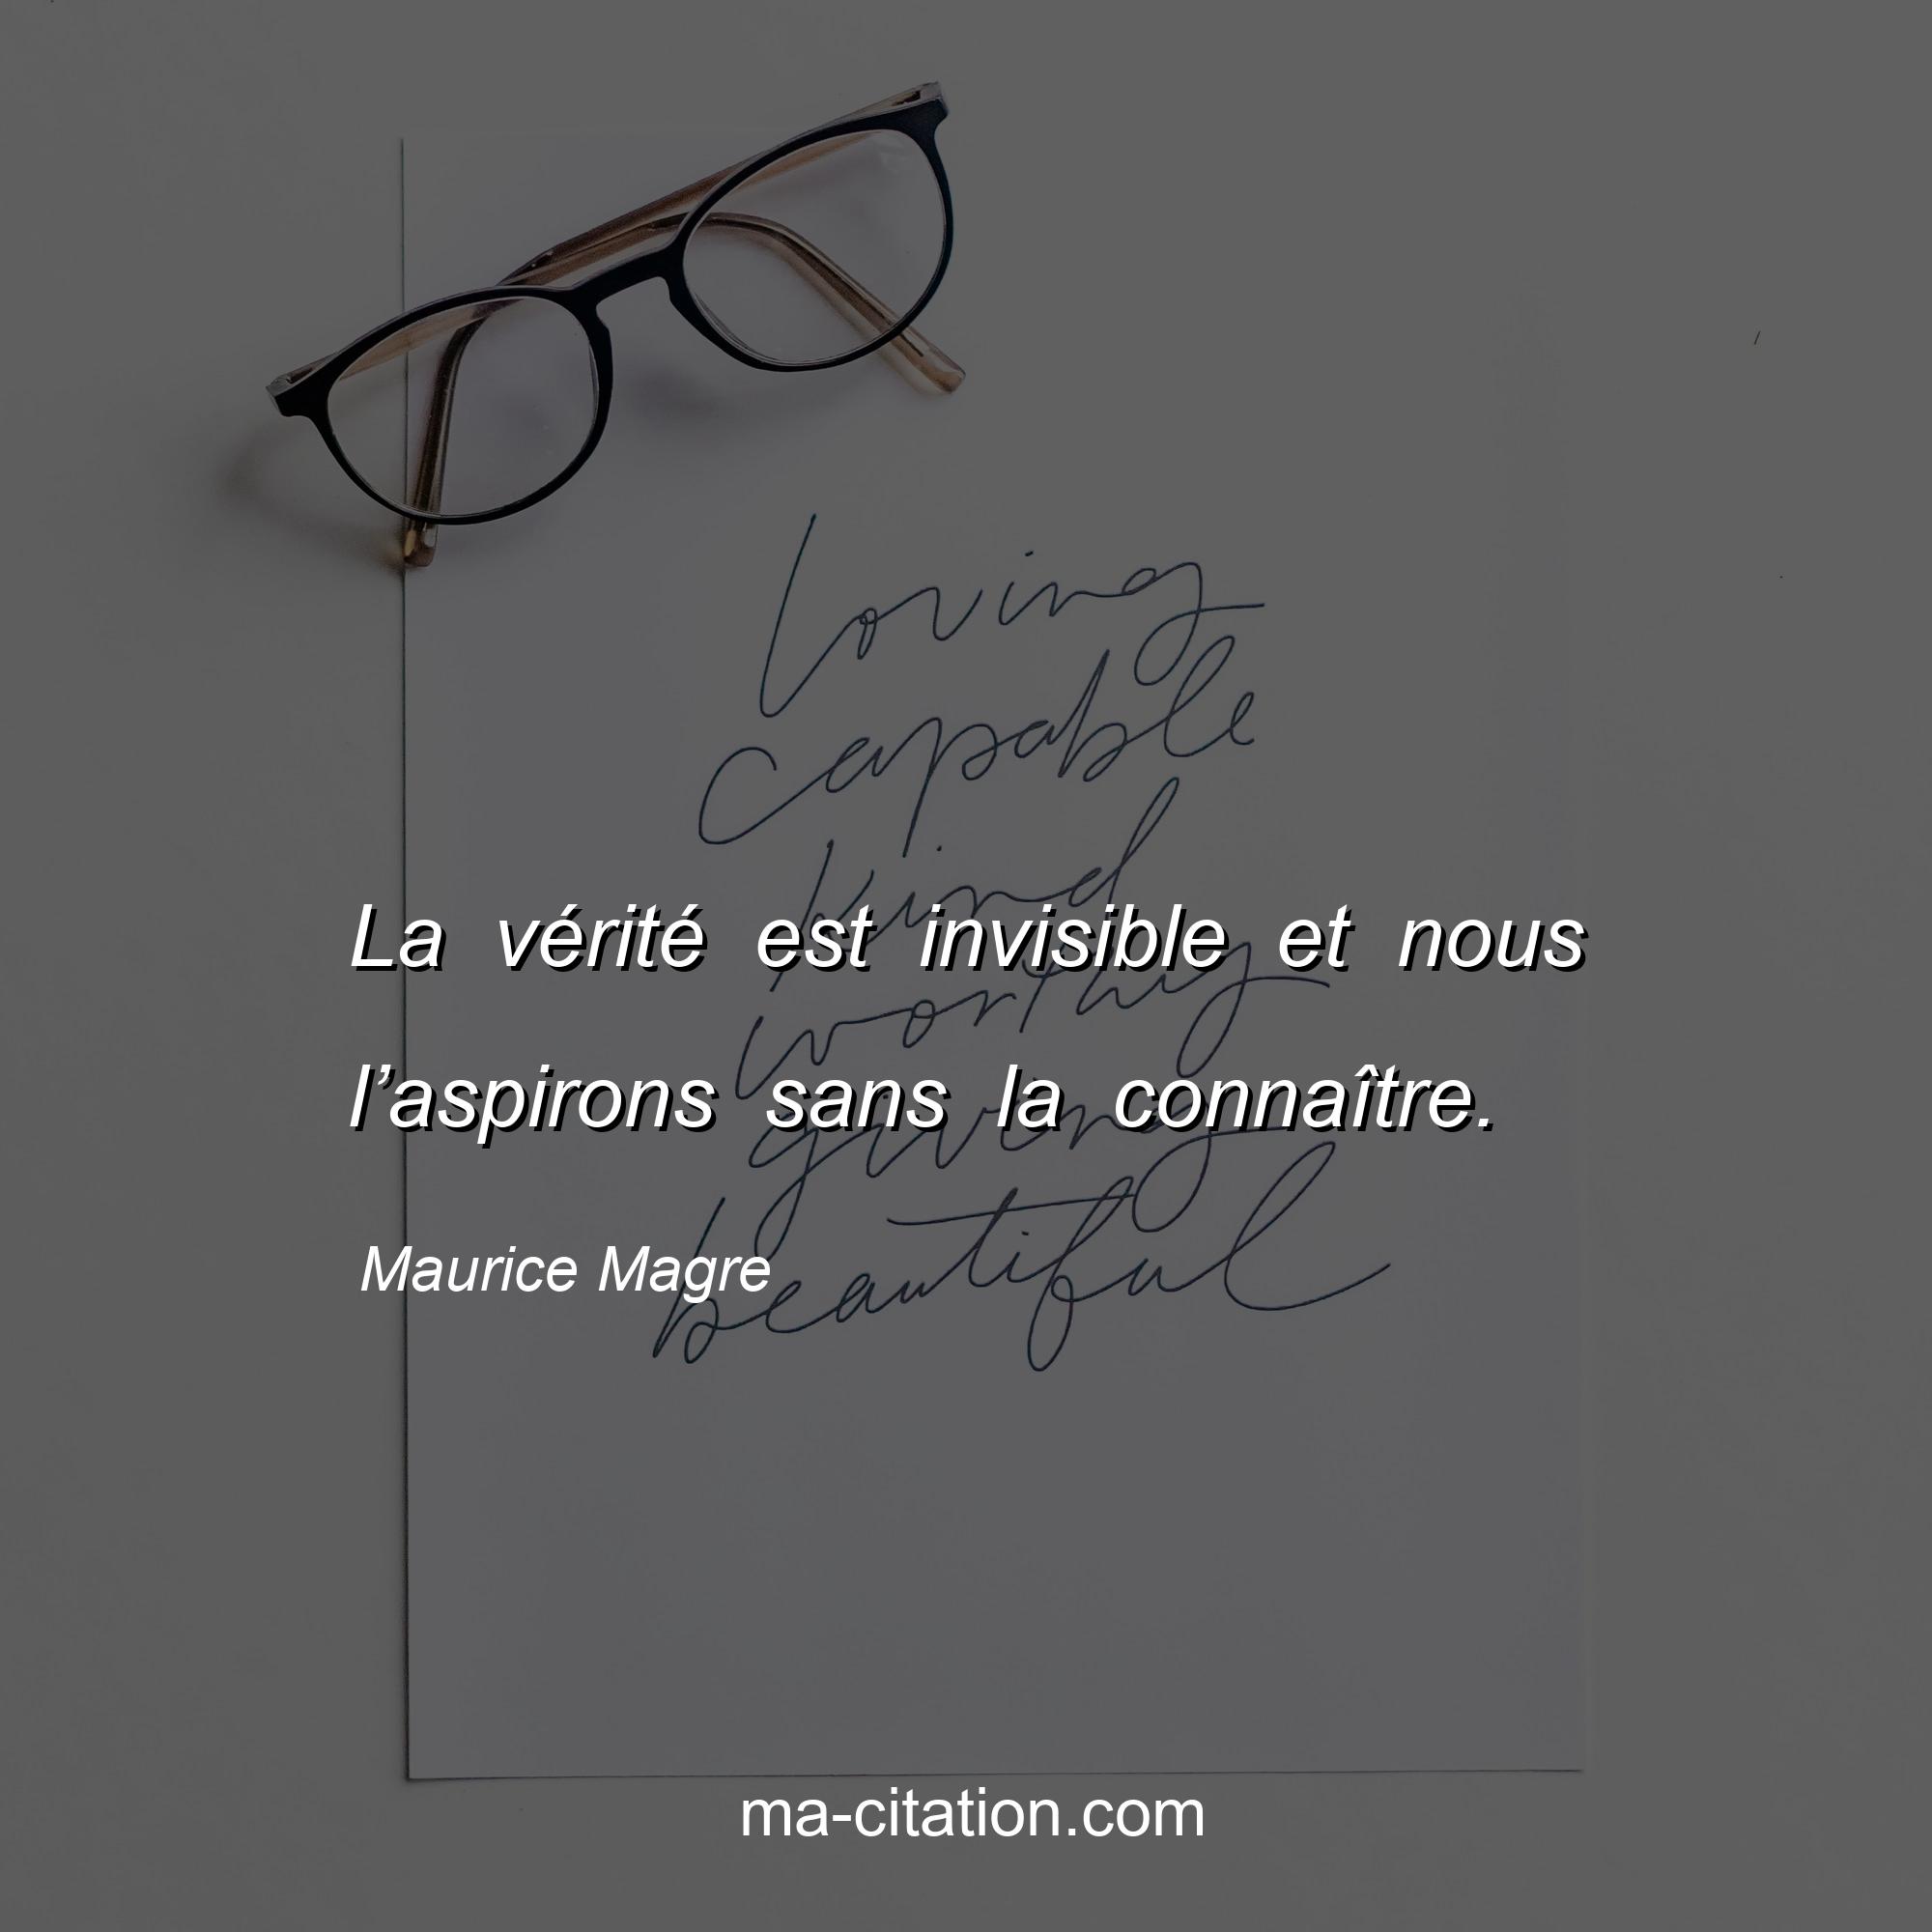 Maurice Magre : La vérité est invisible et nous l’aspirons sans la connaître.